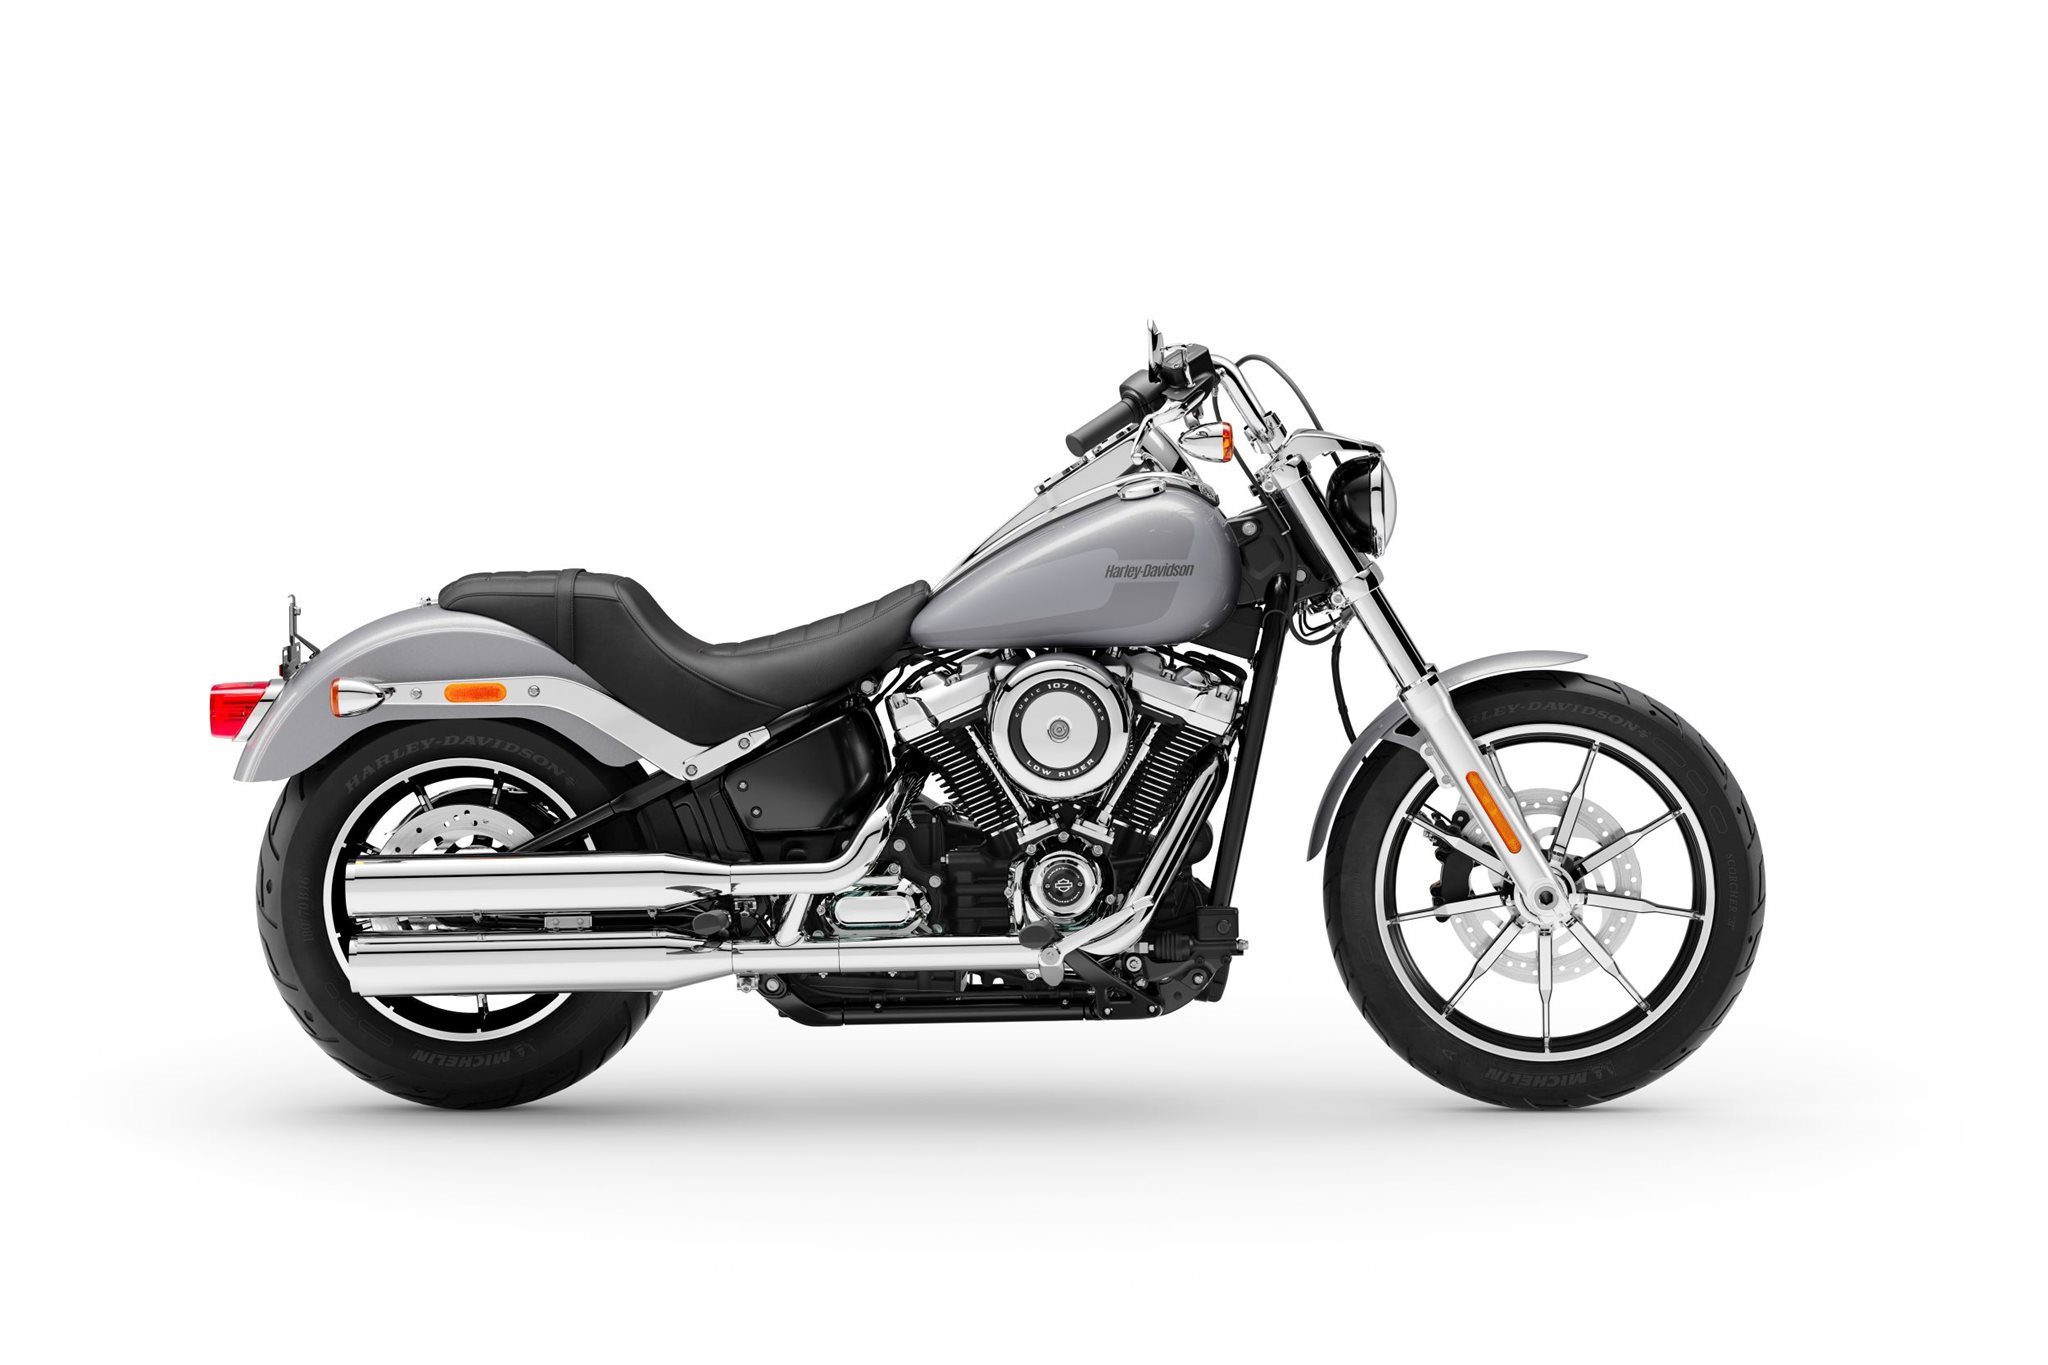 Harley Davidson Softail Low Rider FXLR 2019 001-637123570100578536